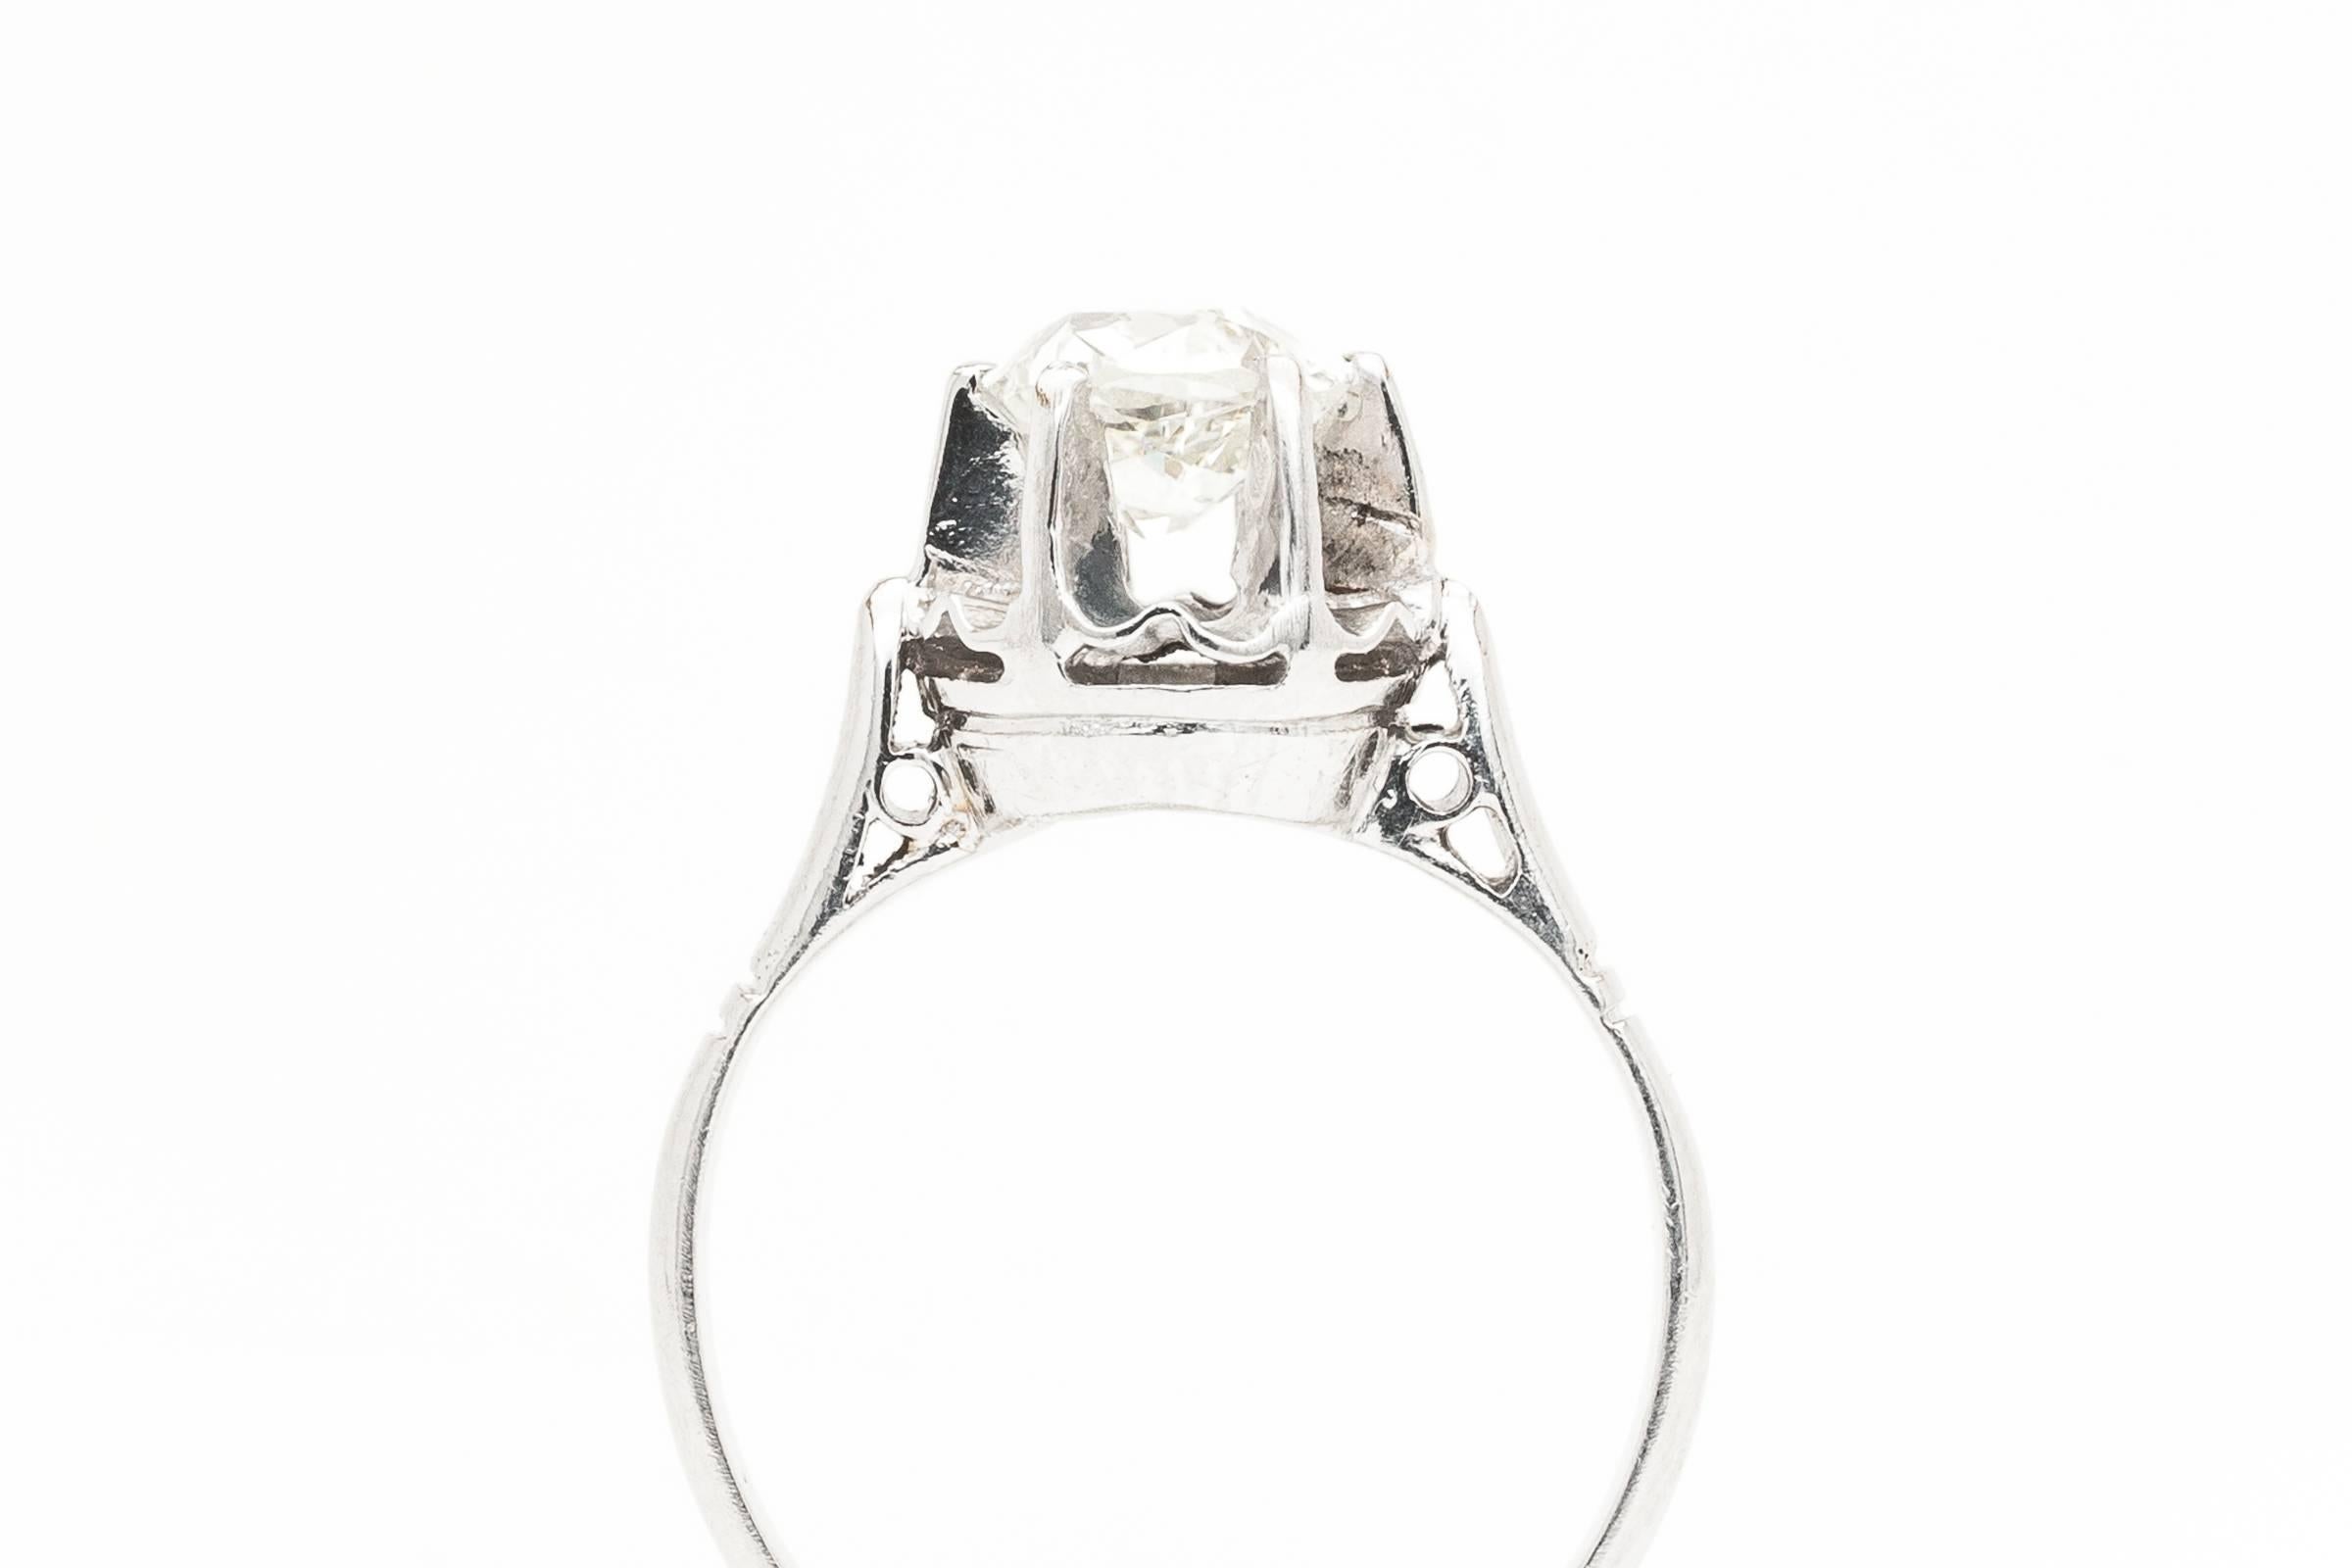 French Art Deco 0.91ct Diamond Ring in Platinum 1920's Parisian 2